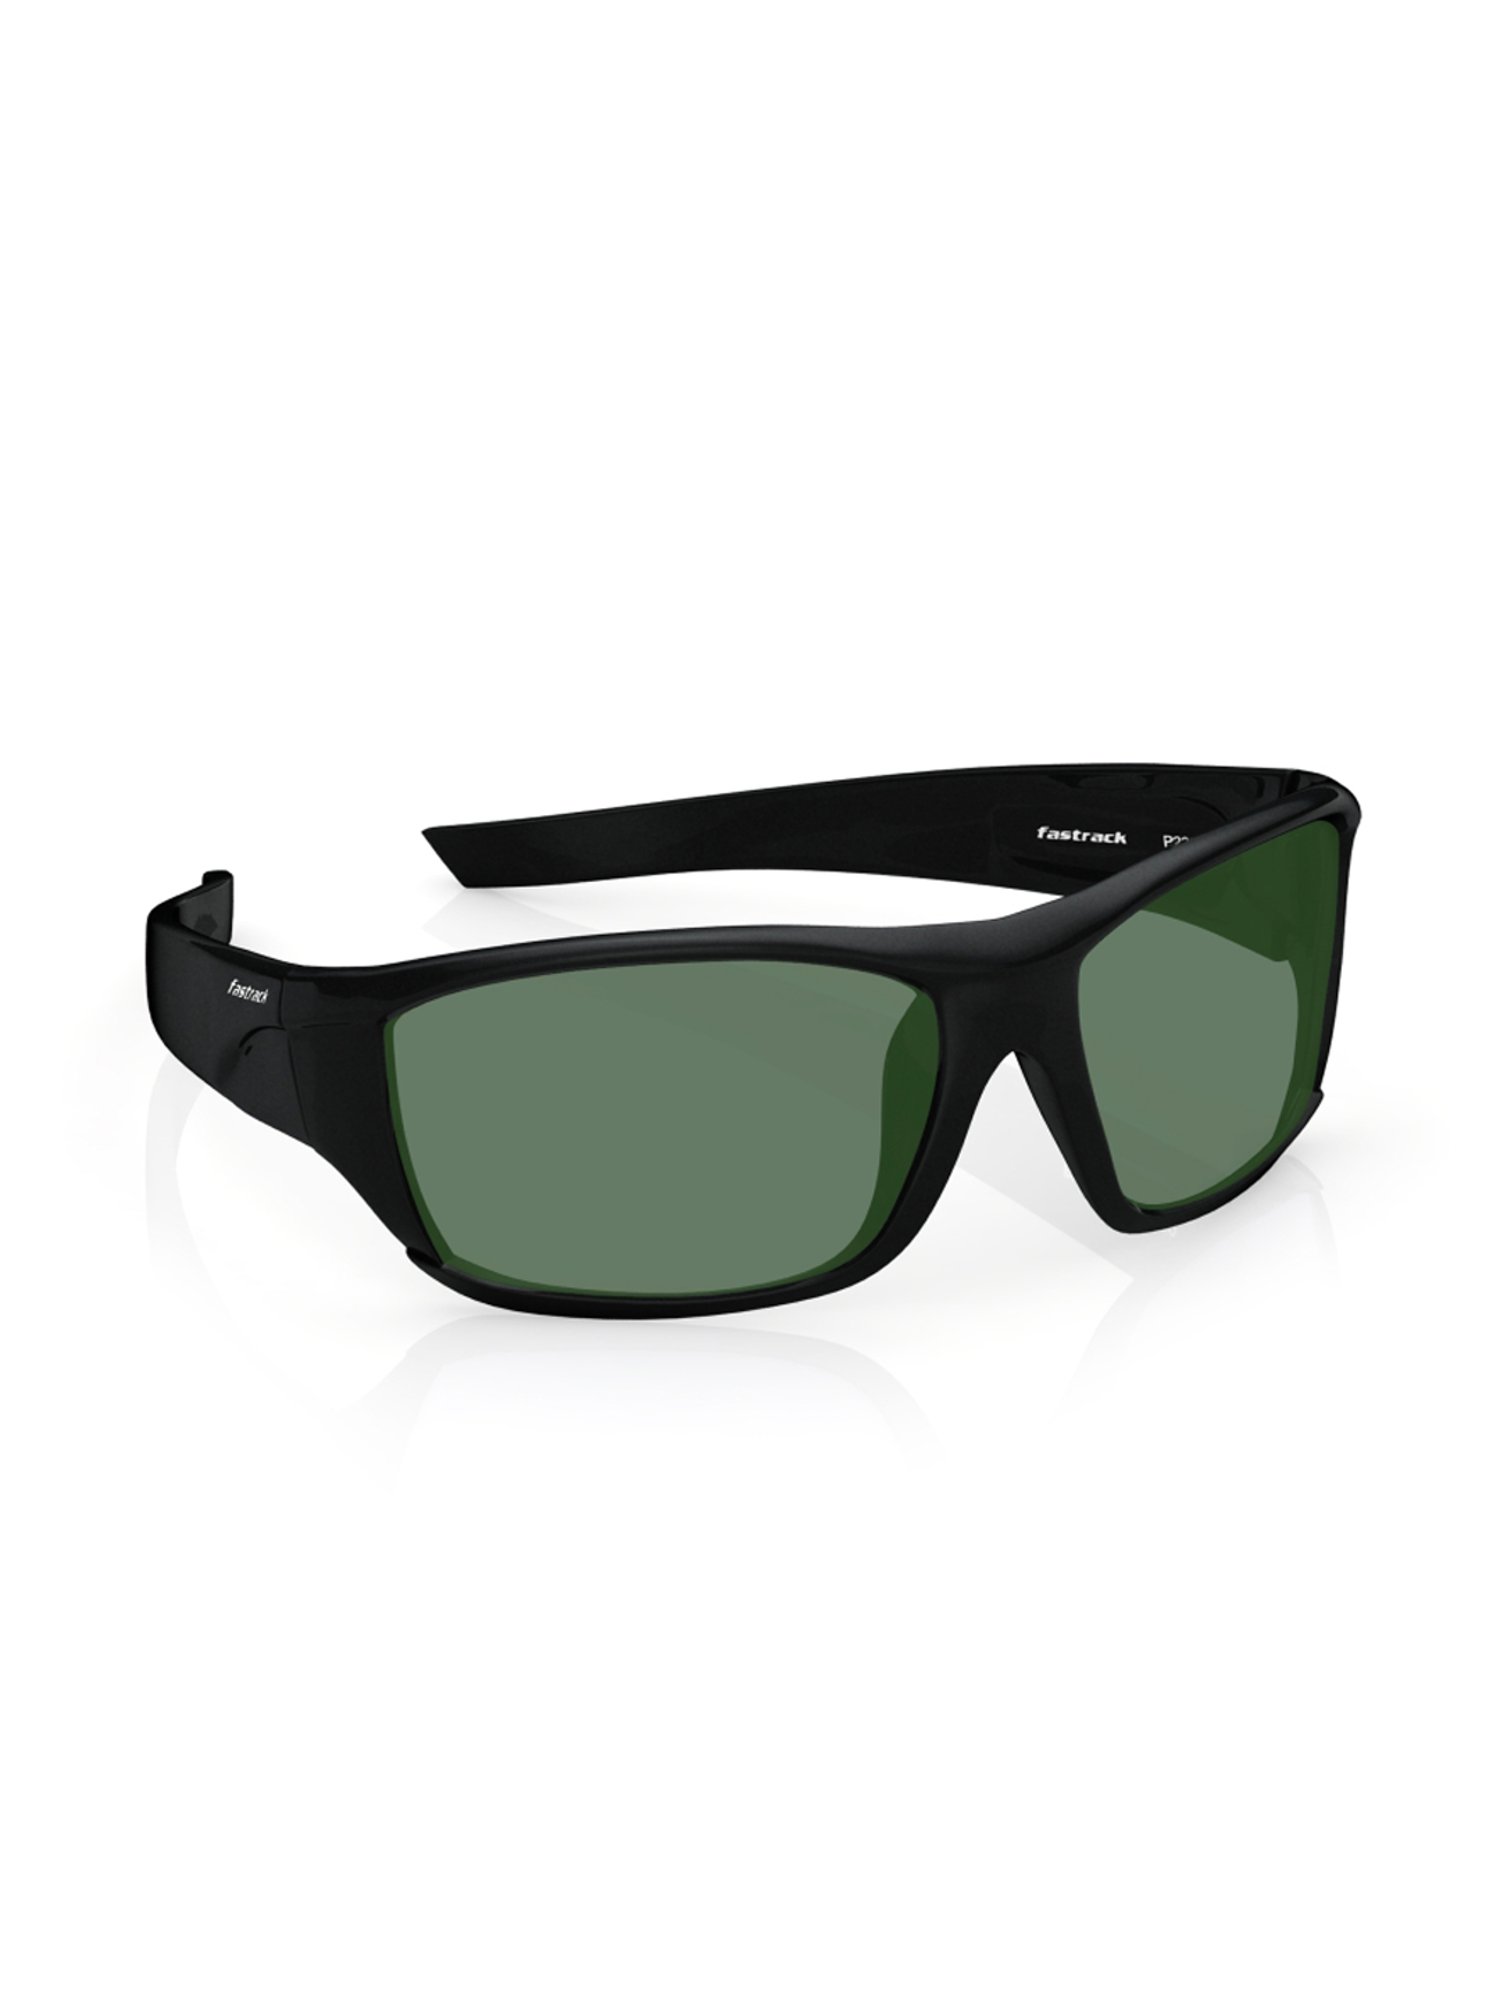 Buy fastrack Men Sunglasses [M123BR3] Online - Best Price fastrack Men  Sunglasses [M123BR3] - Justdial Shop Online.